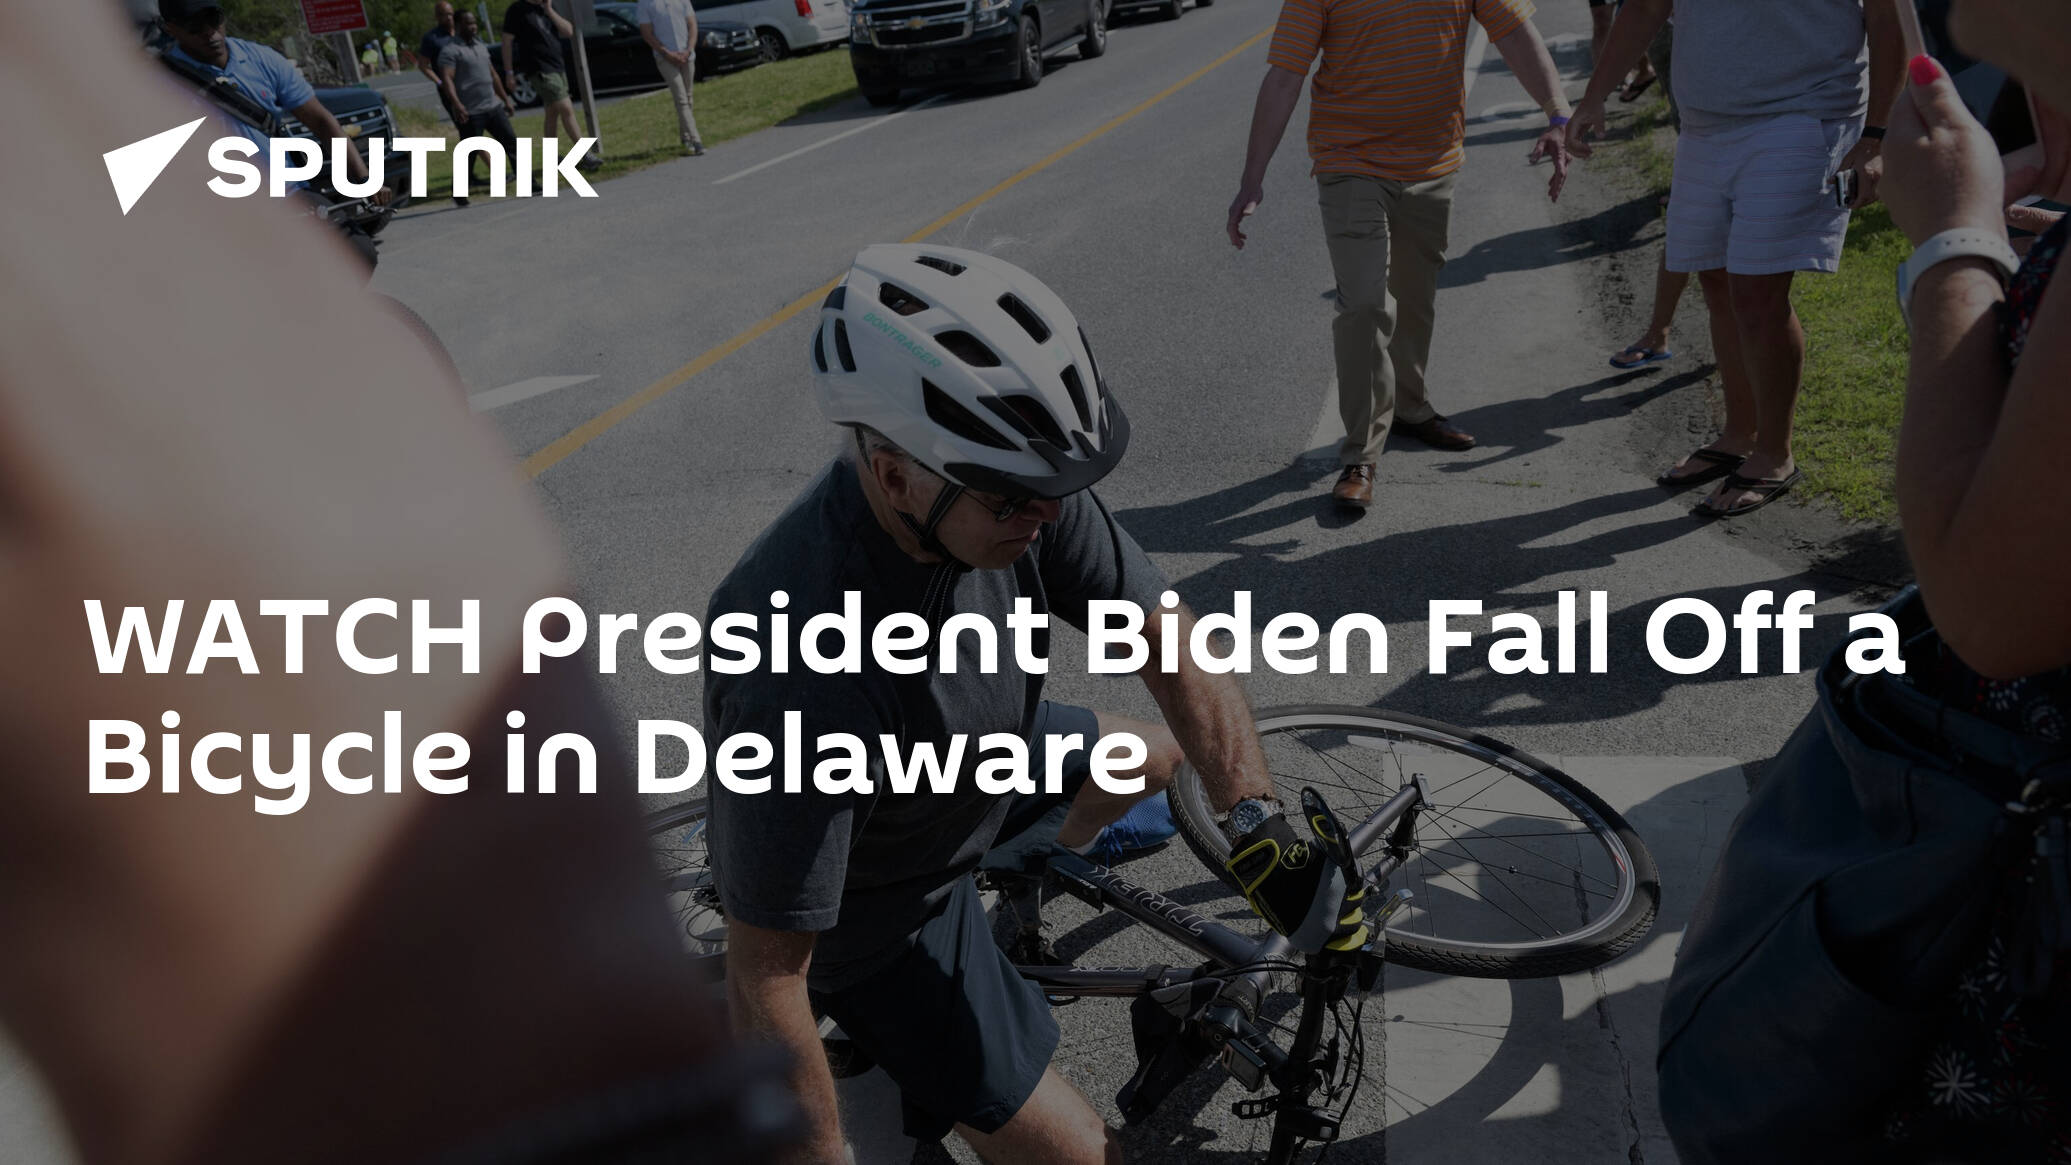 WATCH President Biden Fall Off a Bicycle in Delaware - 18.06.2022, Sputnik International